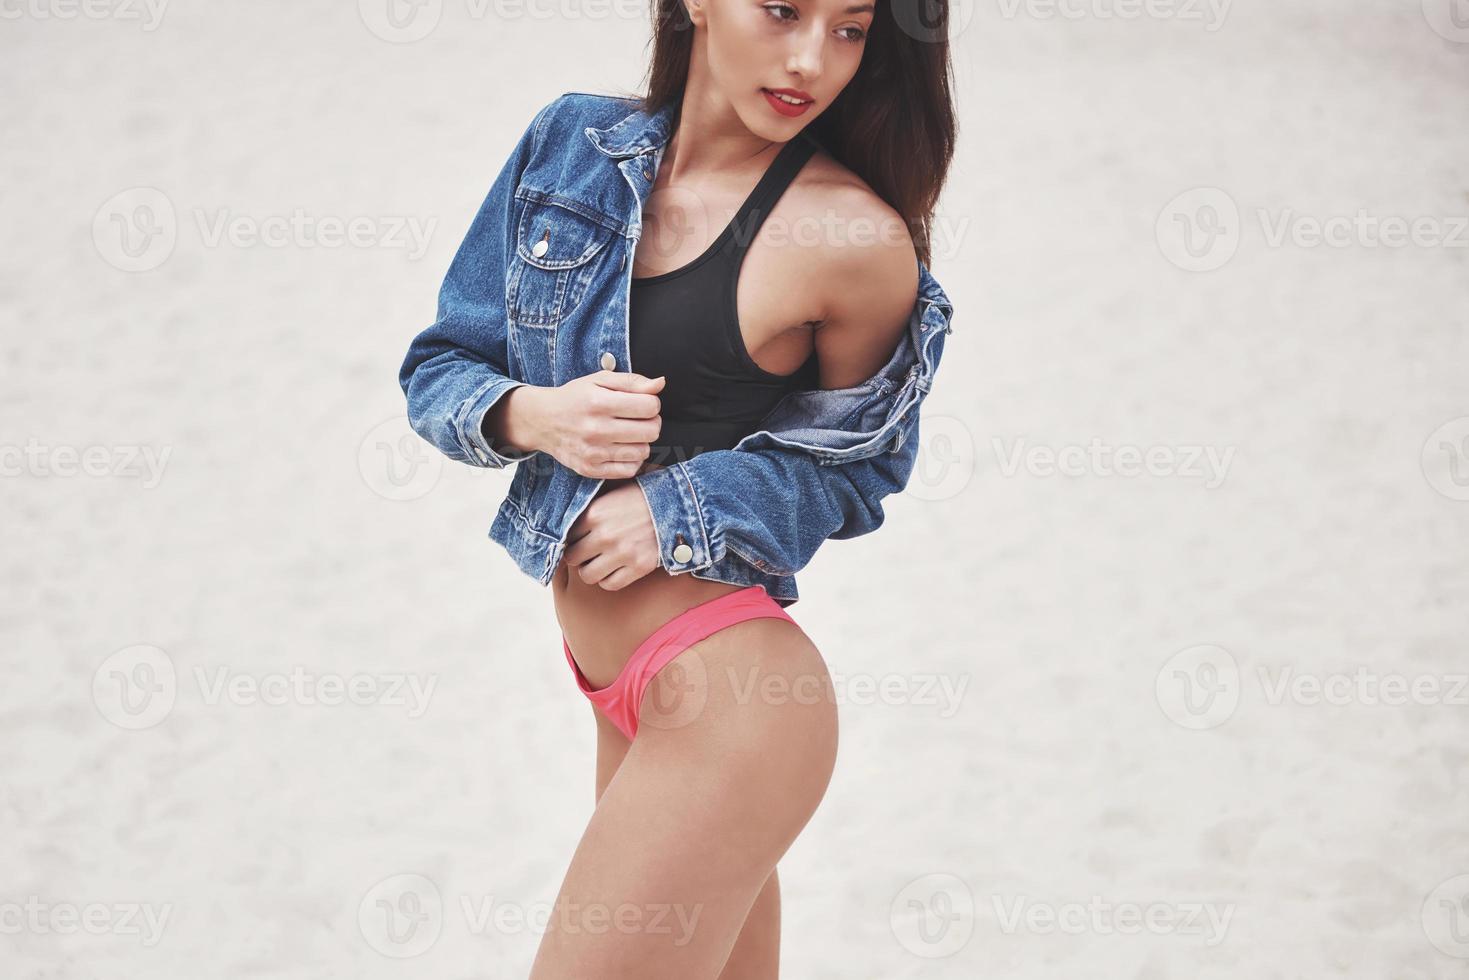 garota linda de luxo magro em biquíni e jeans jaket na praia de areia em uma ilha tropical. corpo bronzeado sexy e figura perfeita foto